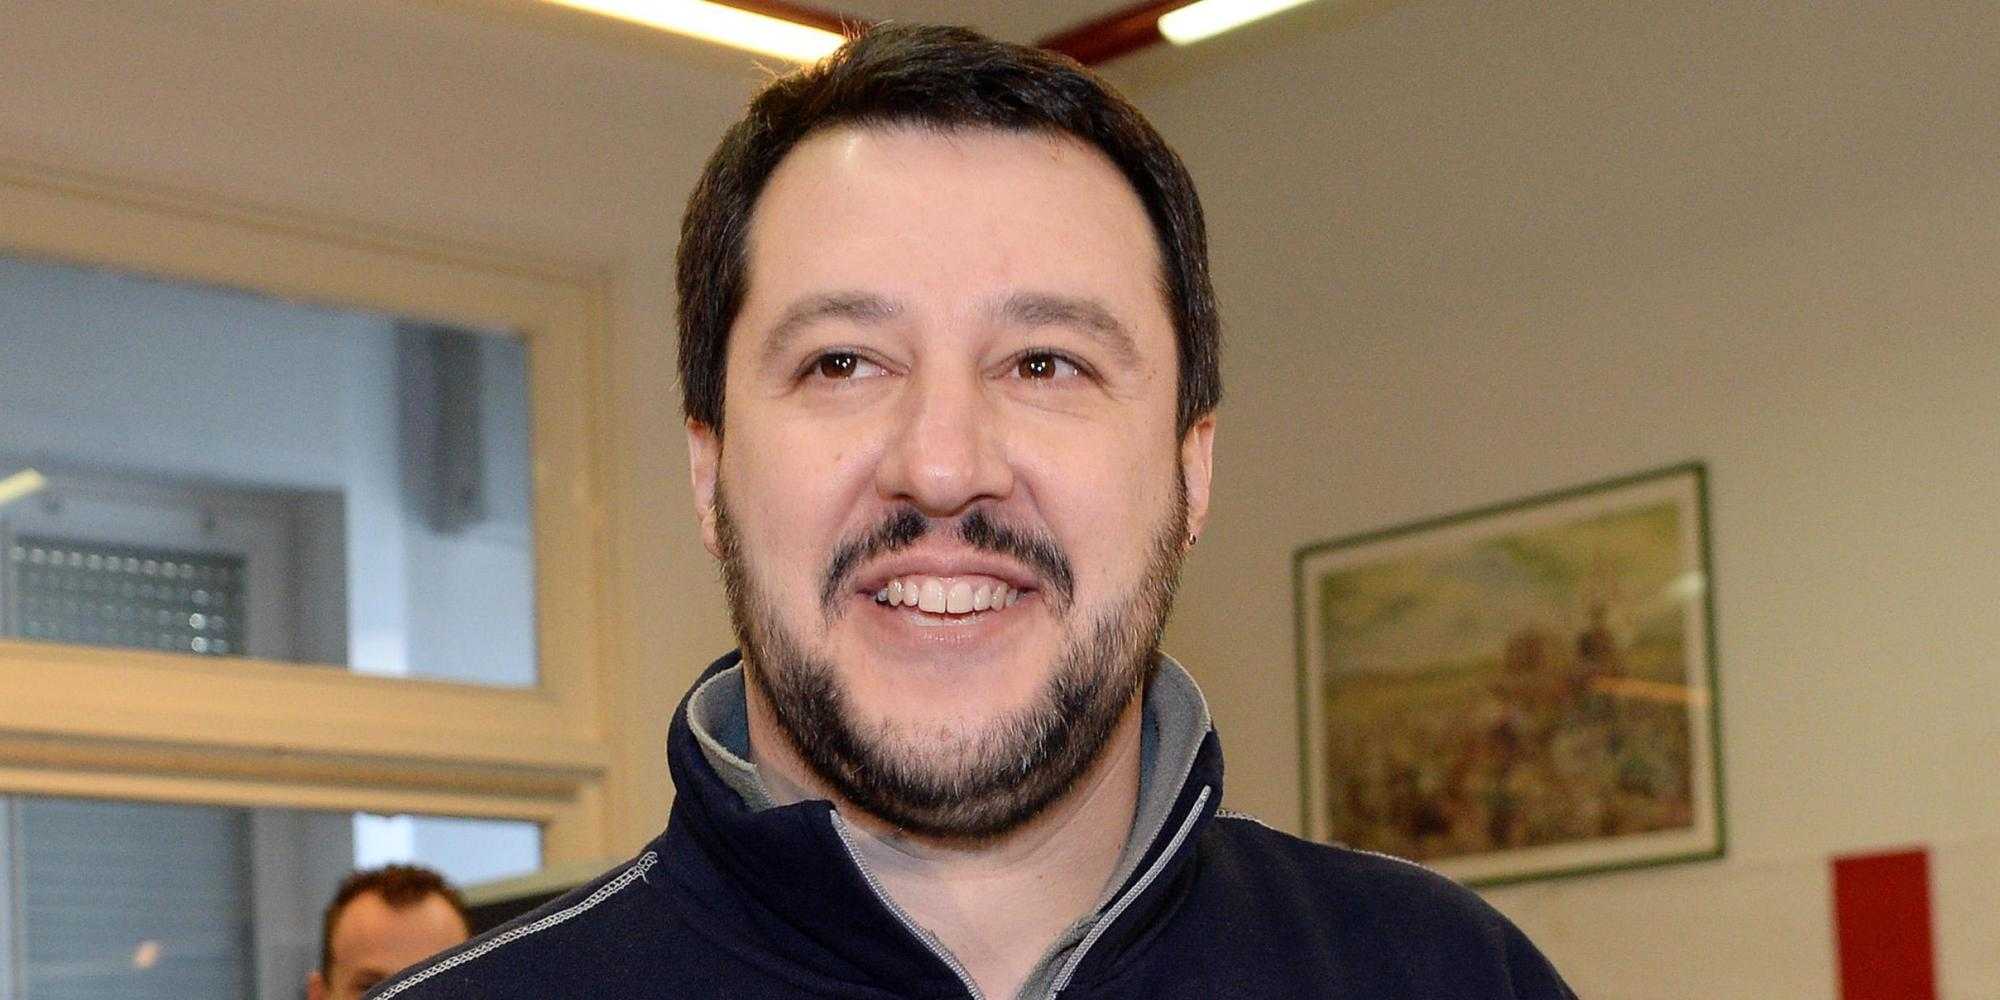 Legge elettorale, Salvini: "Chiederemo agli italiani un voto chiaro per evitare minestroni"